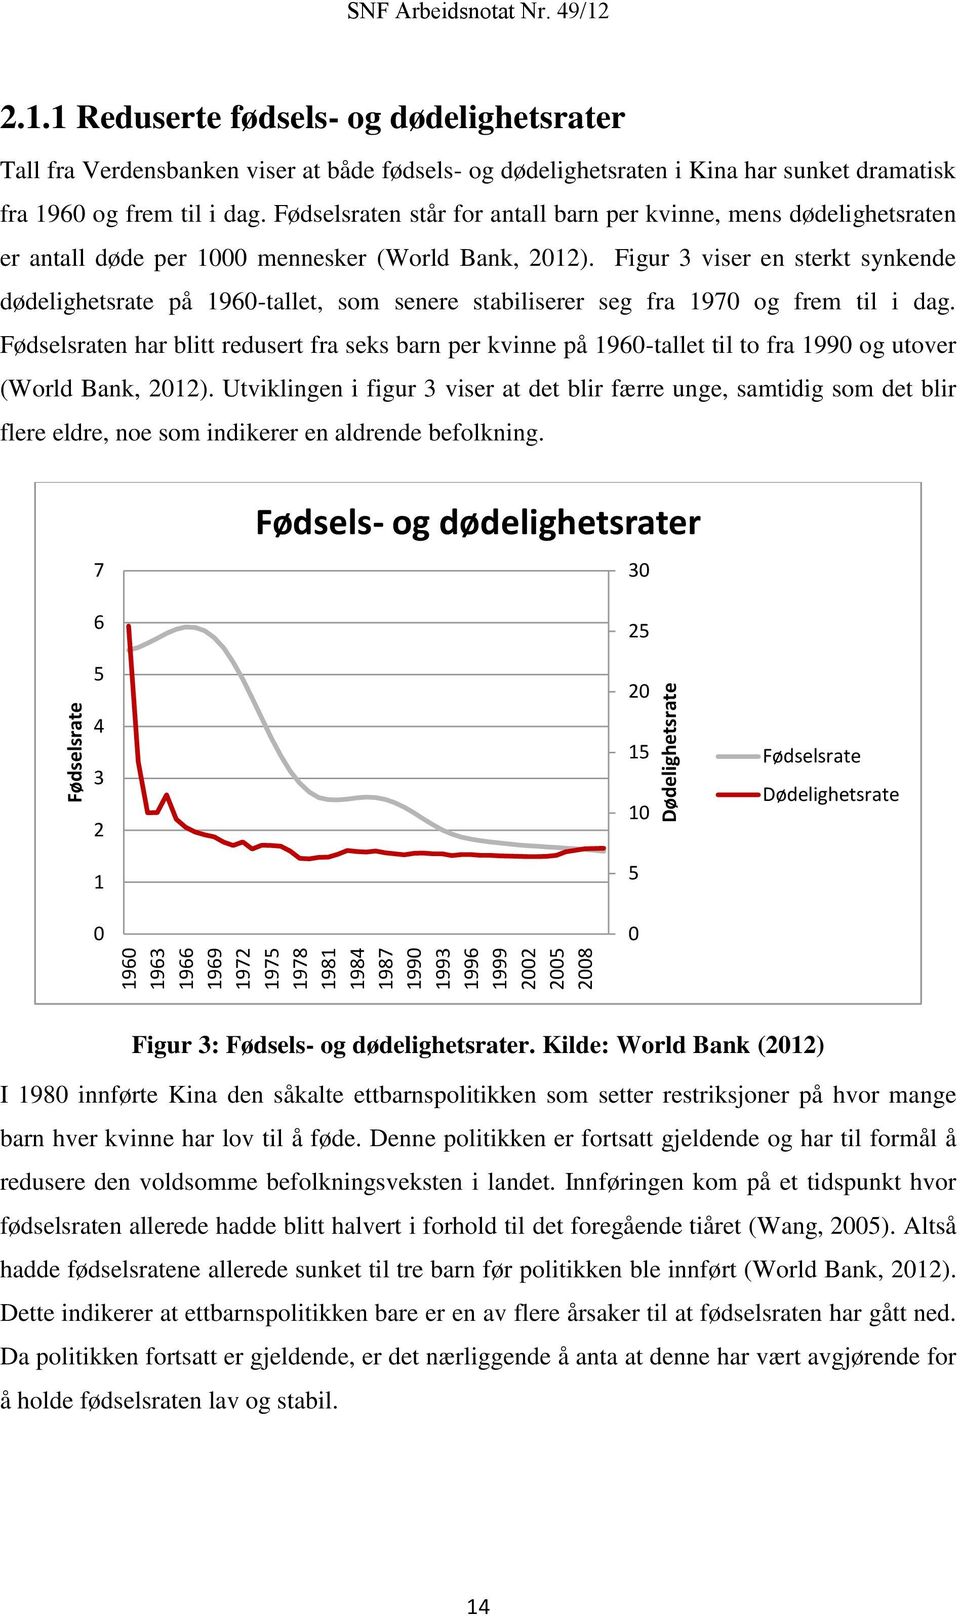 Figur 3 viser en sterkt synkende dødelighetsrate på 1960-tallet, som senere stabiliserer seg fra 1970 og frem til i dag.